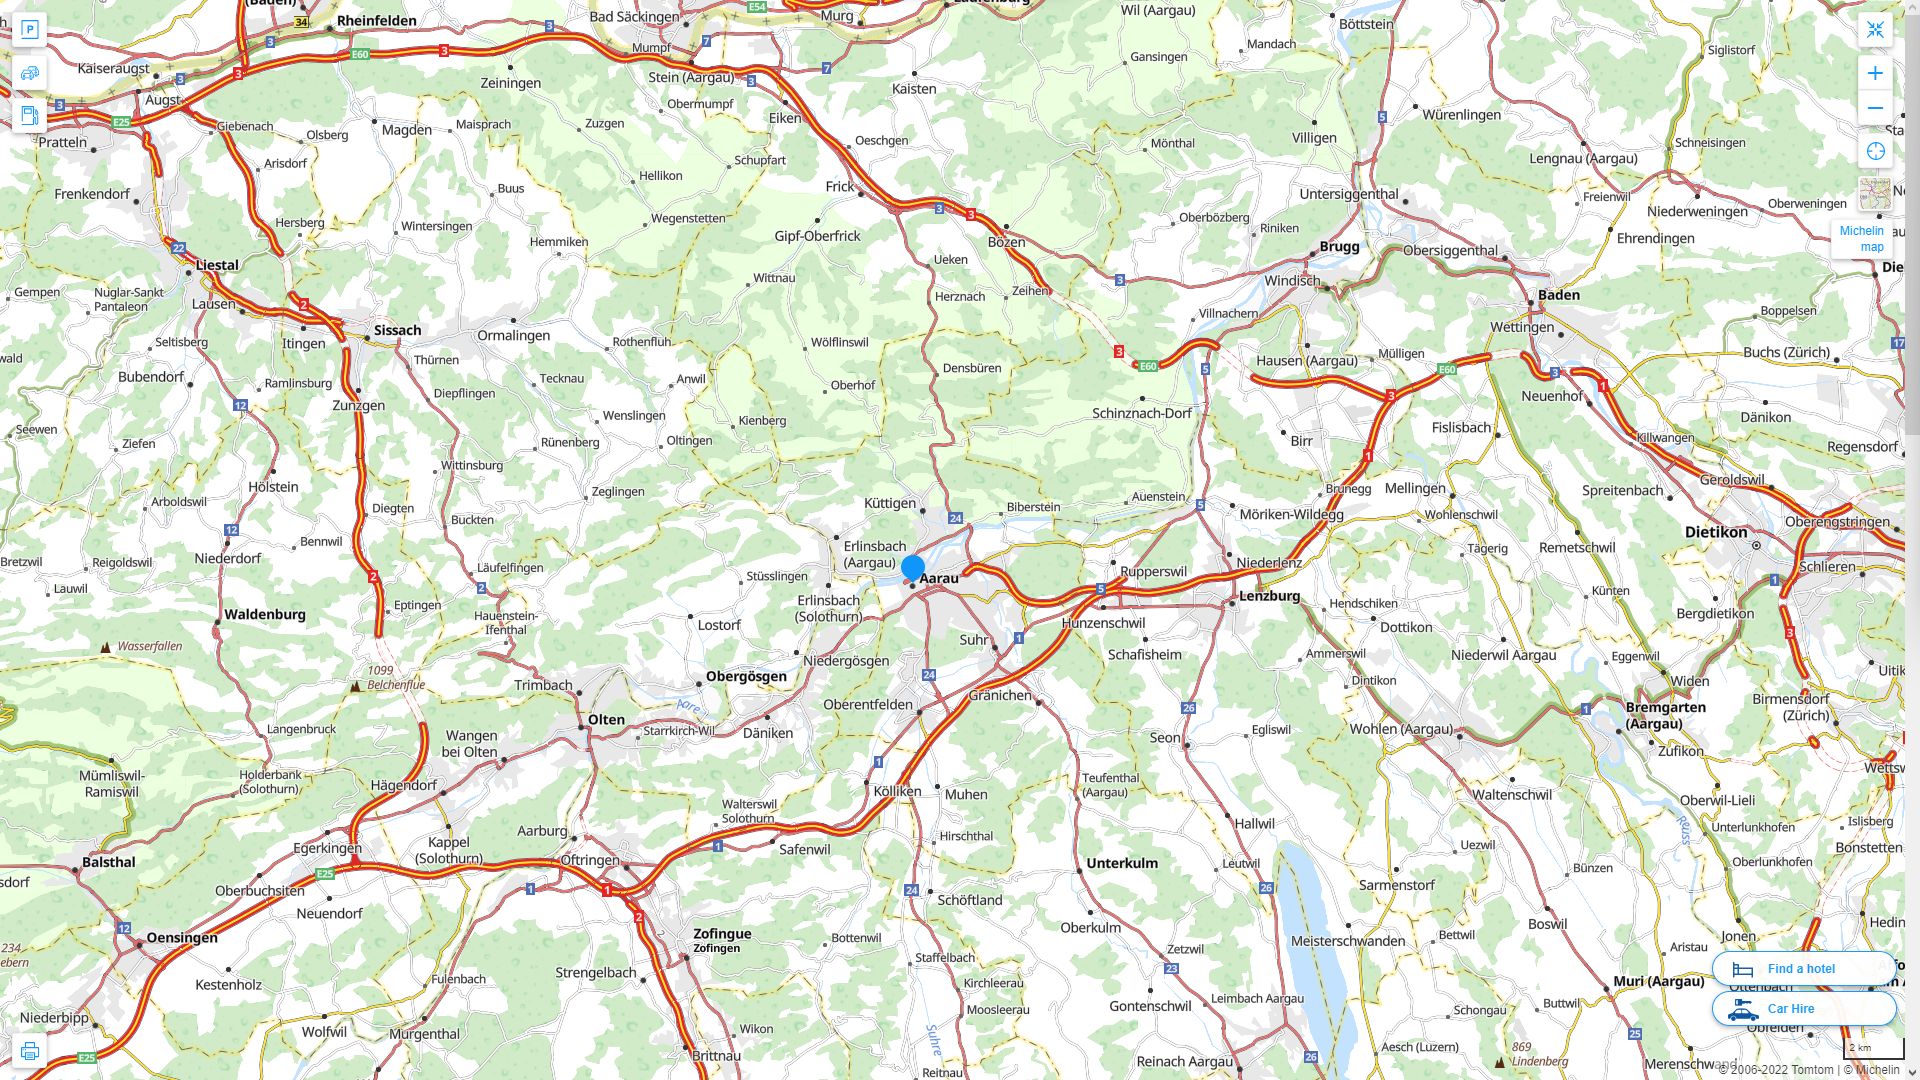 Aarau Highway and Road Map